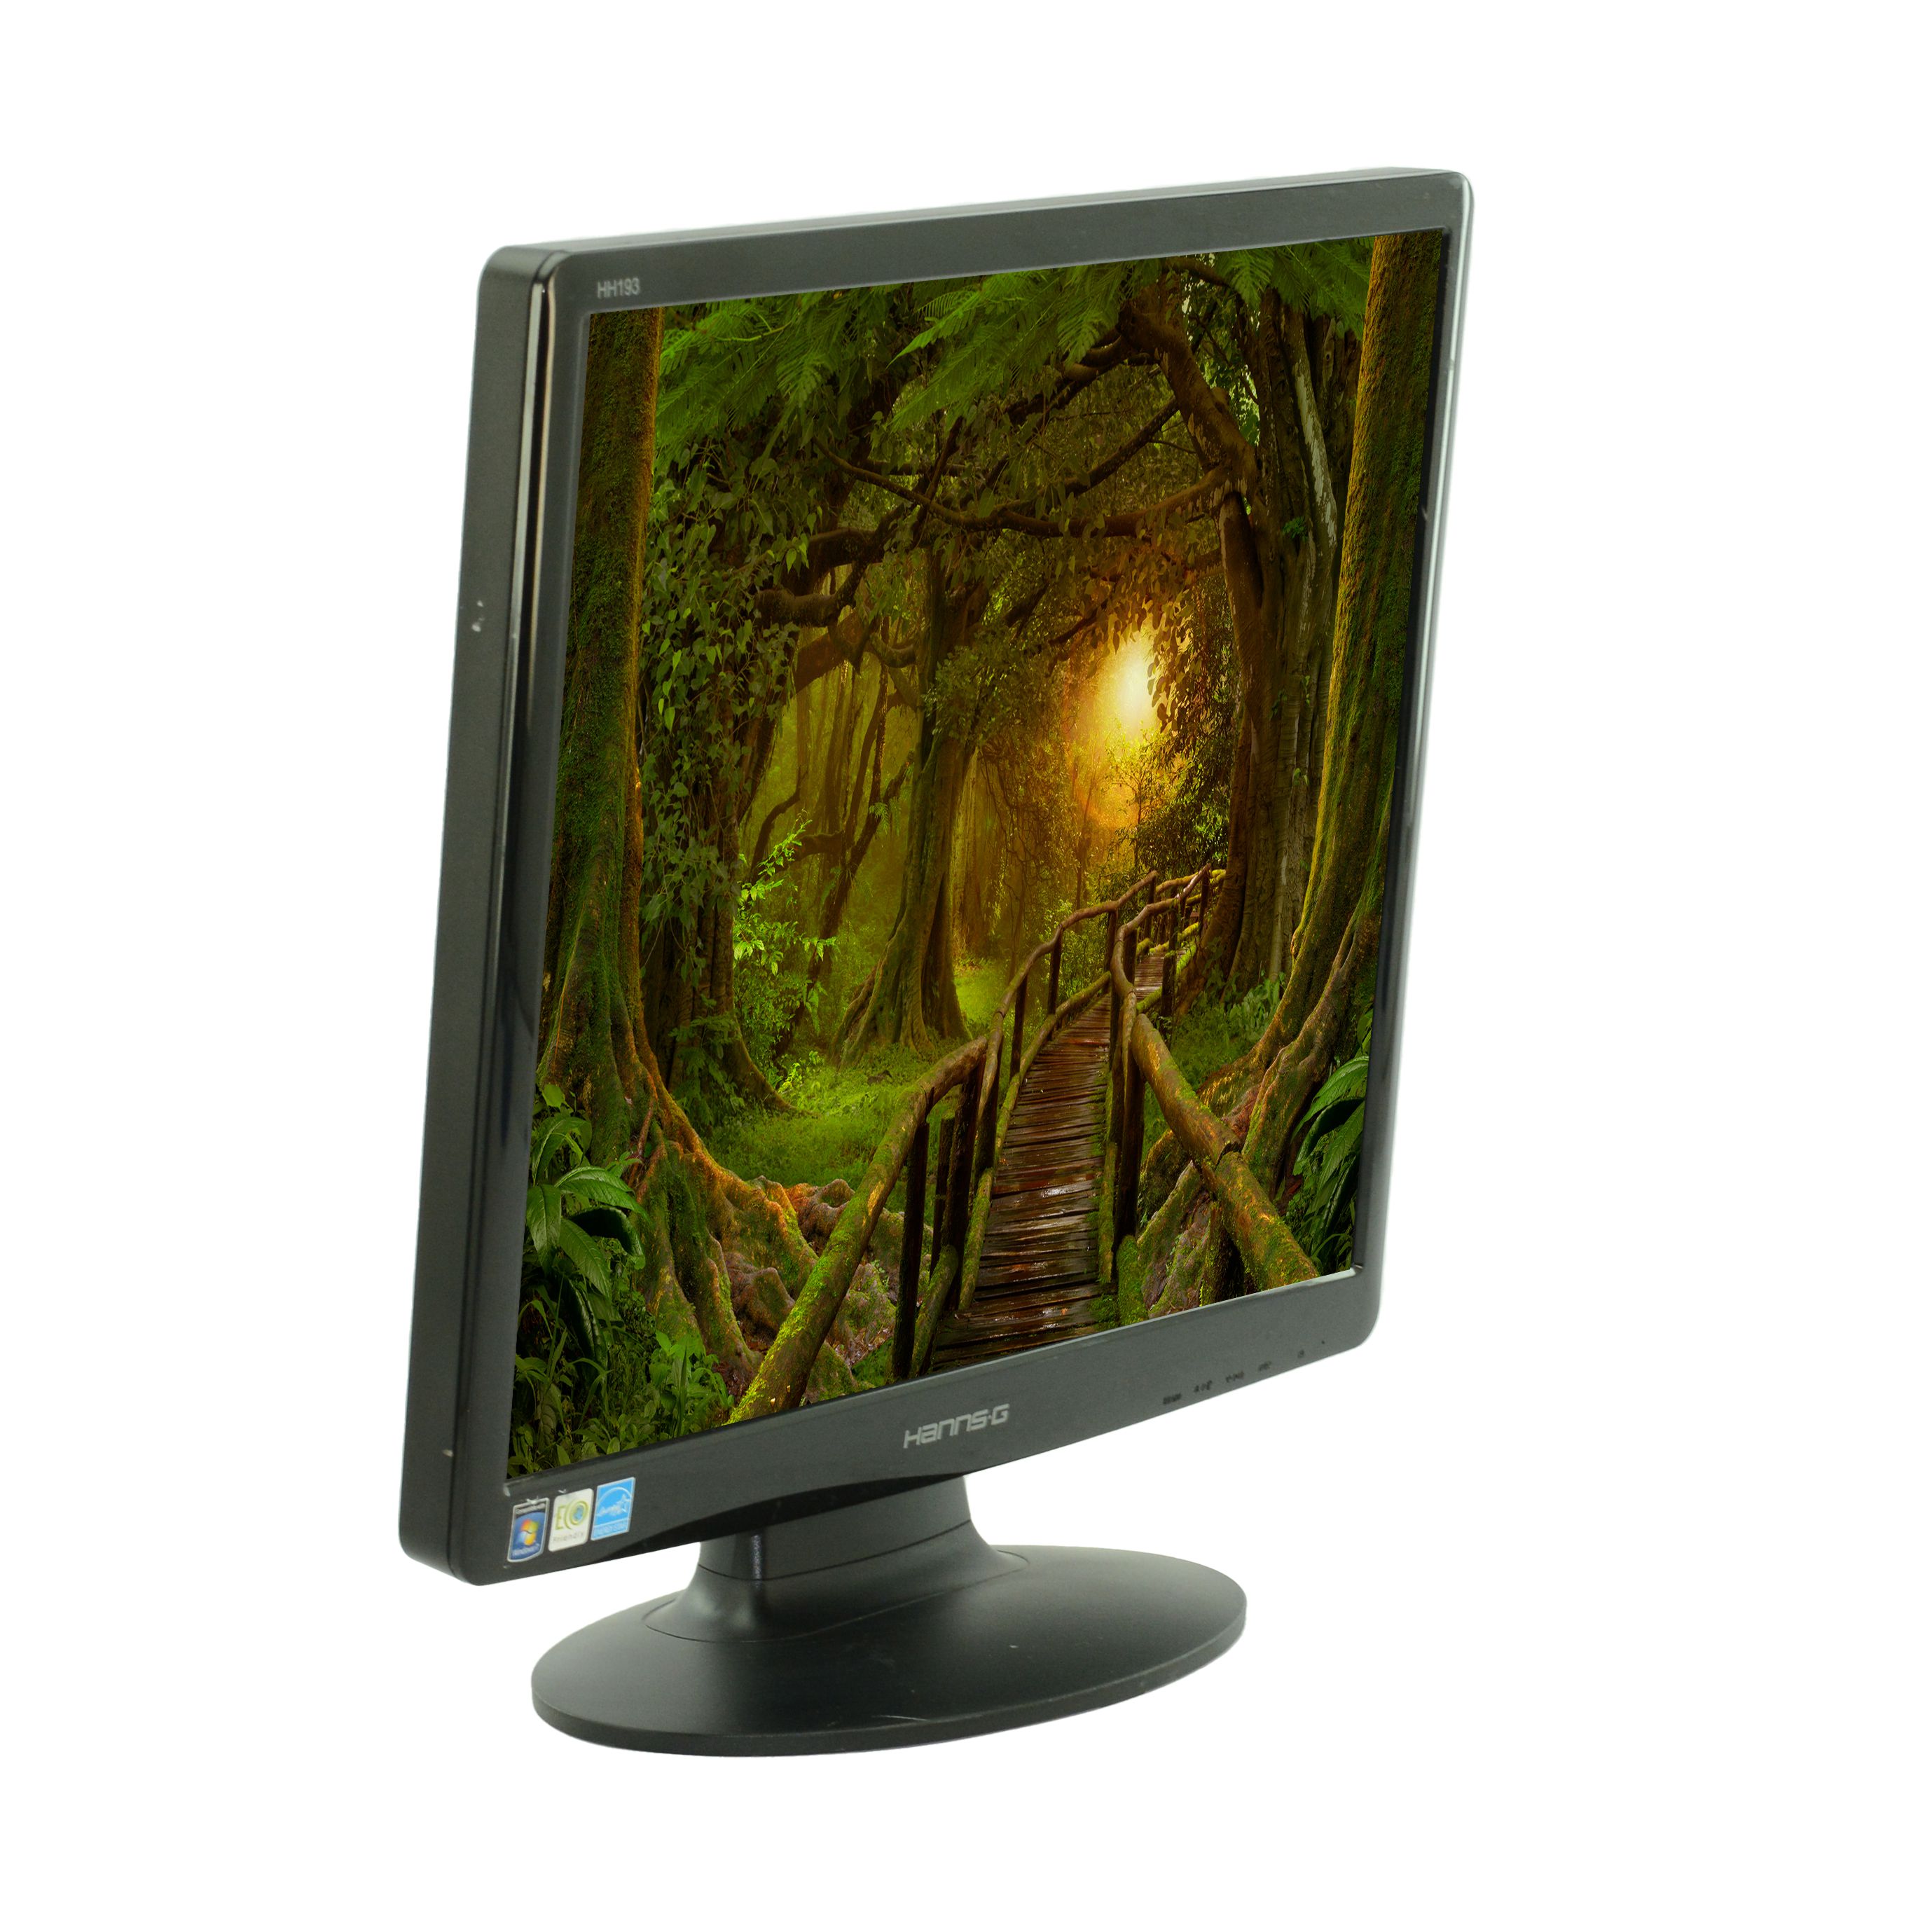 19" pollici widescreen Monitor LCD Schermo diverse marche Dell HP Samsung HANNSG LG 